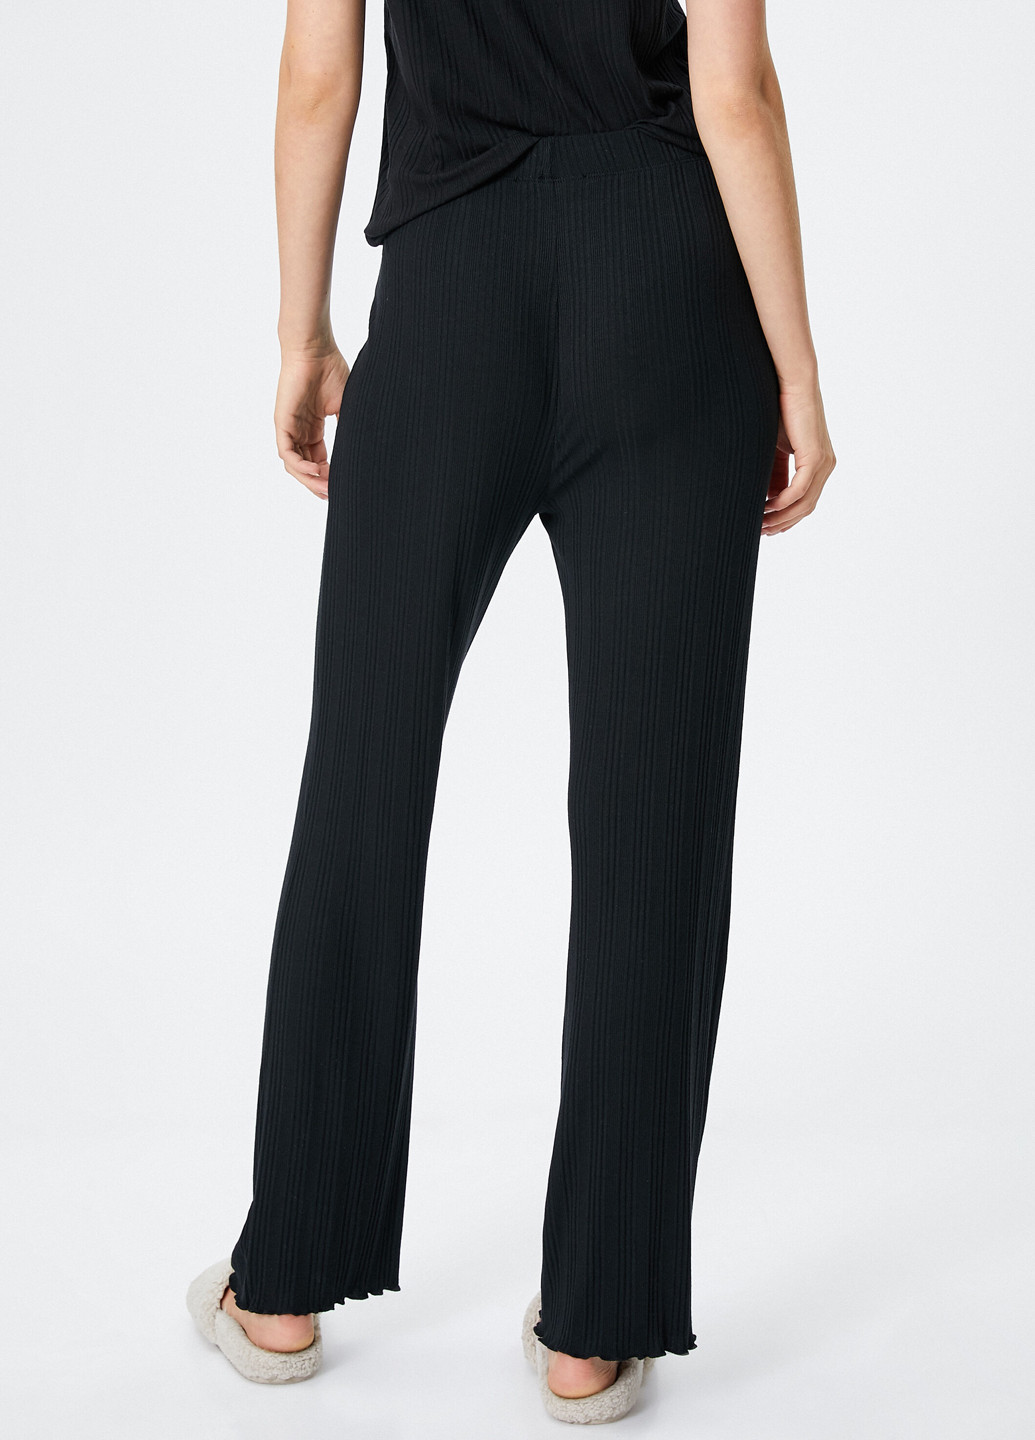 Черная всесезон пижама (футболка, брюки) футболка + брюки KOTON